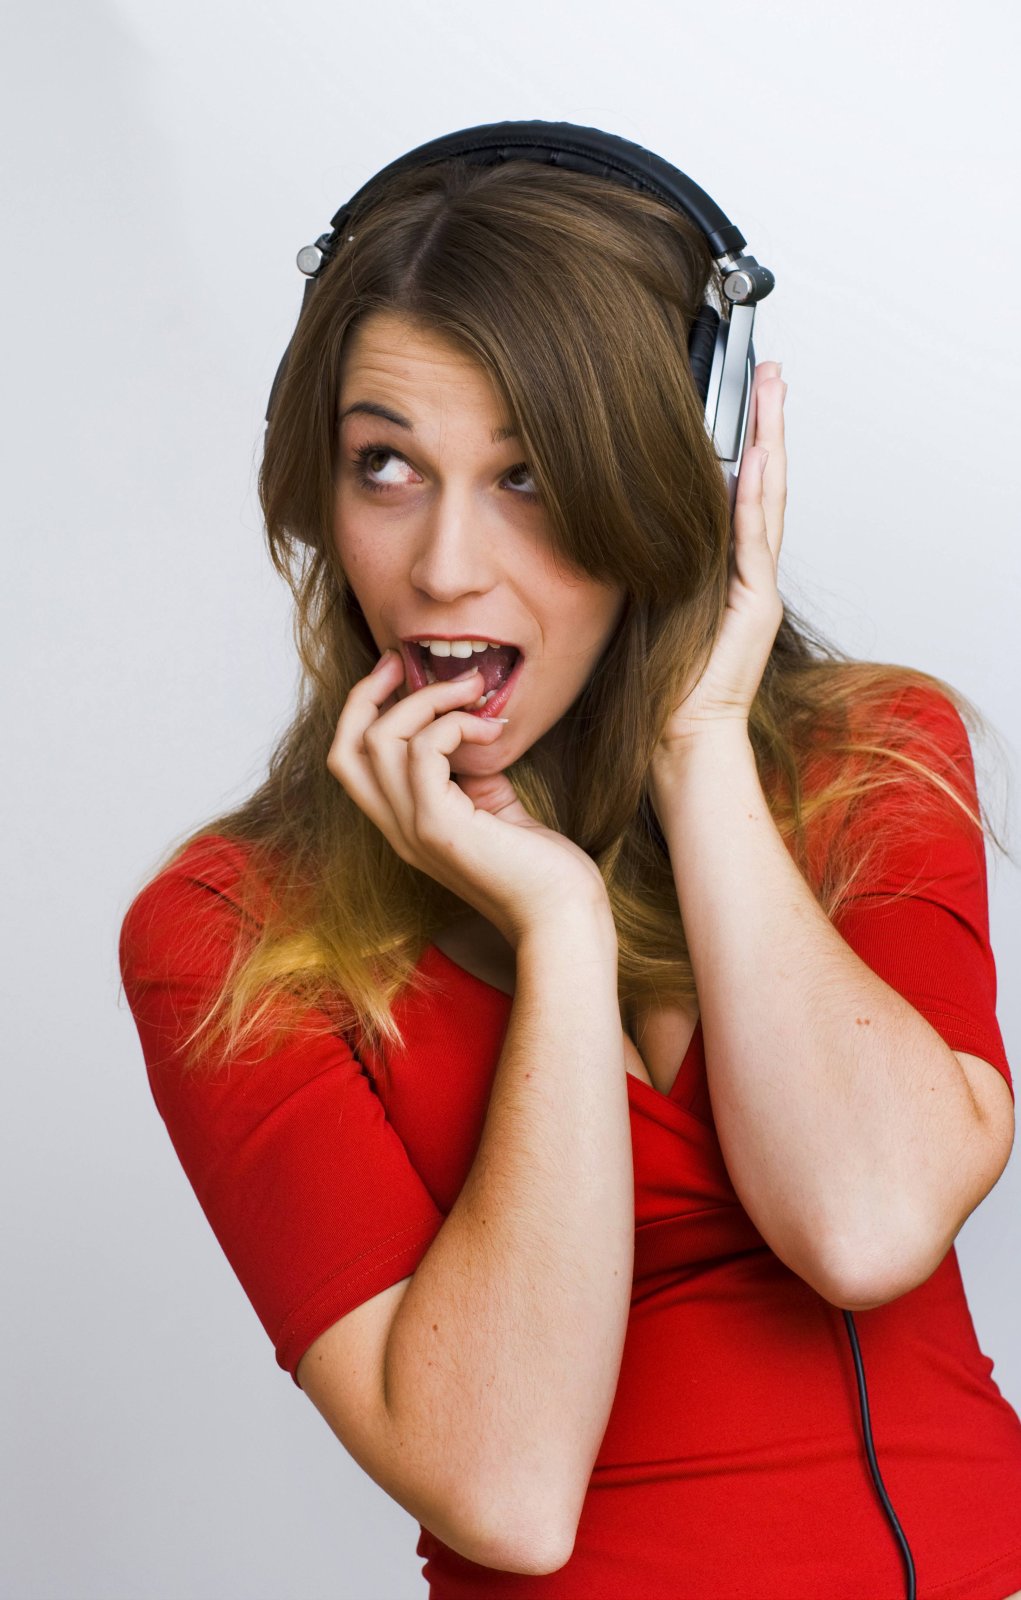 Eine Frau guckt erstaunt und hört Musik